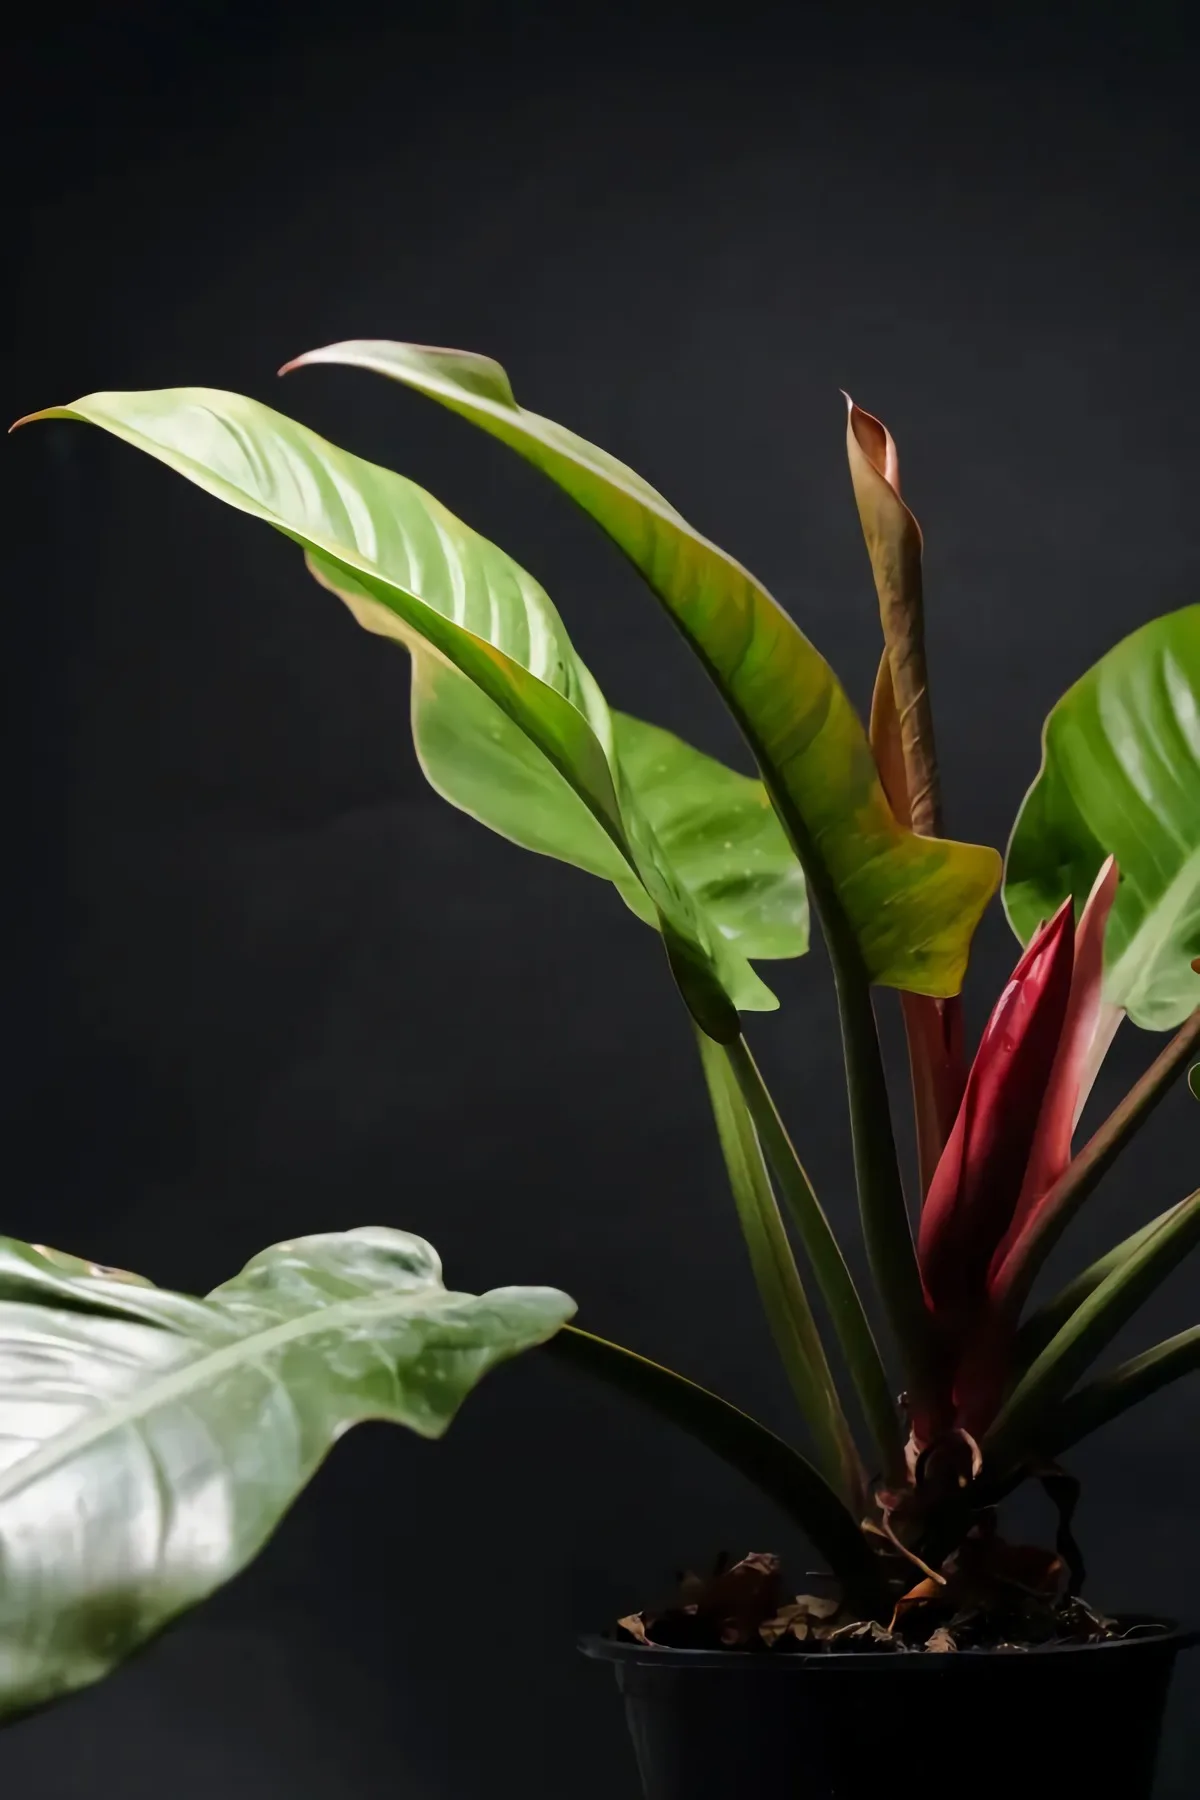 philodendron rouge imperial idée de plante d intérieur en pot original